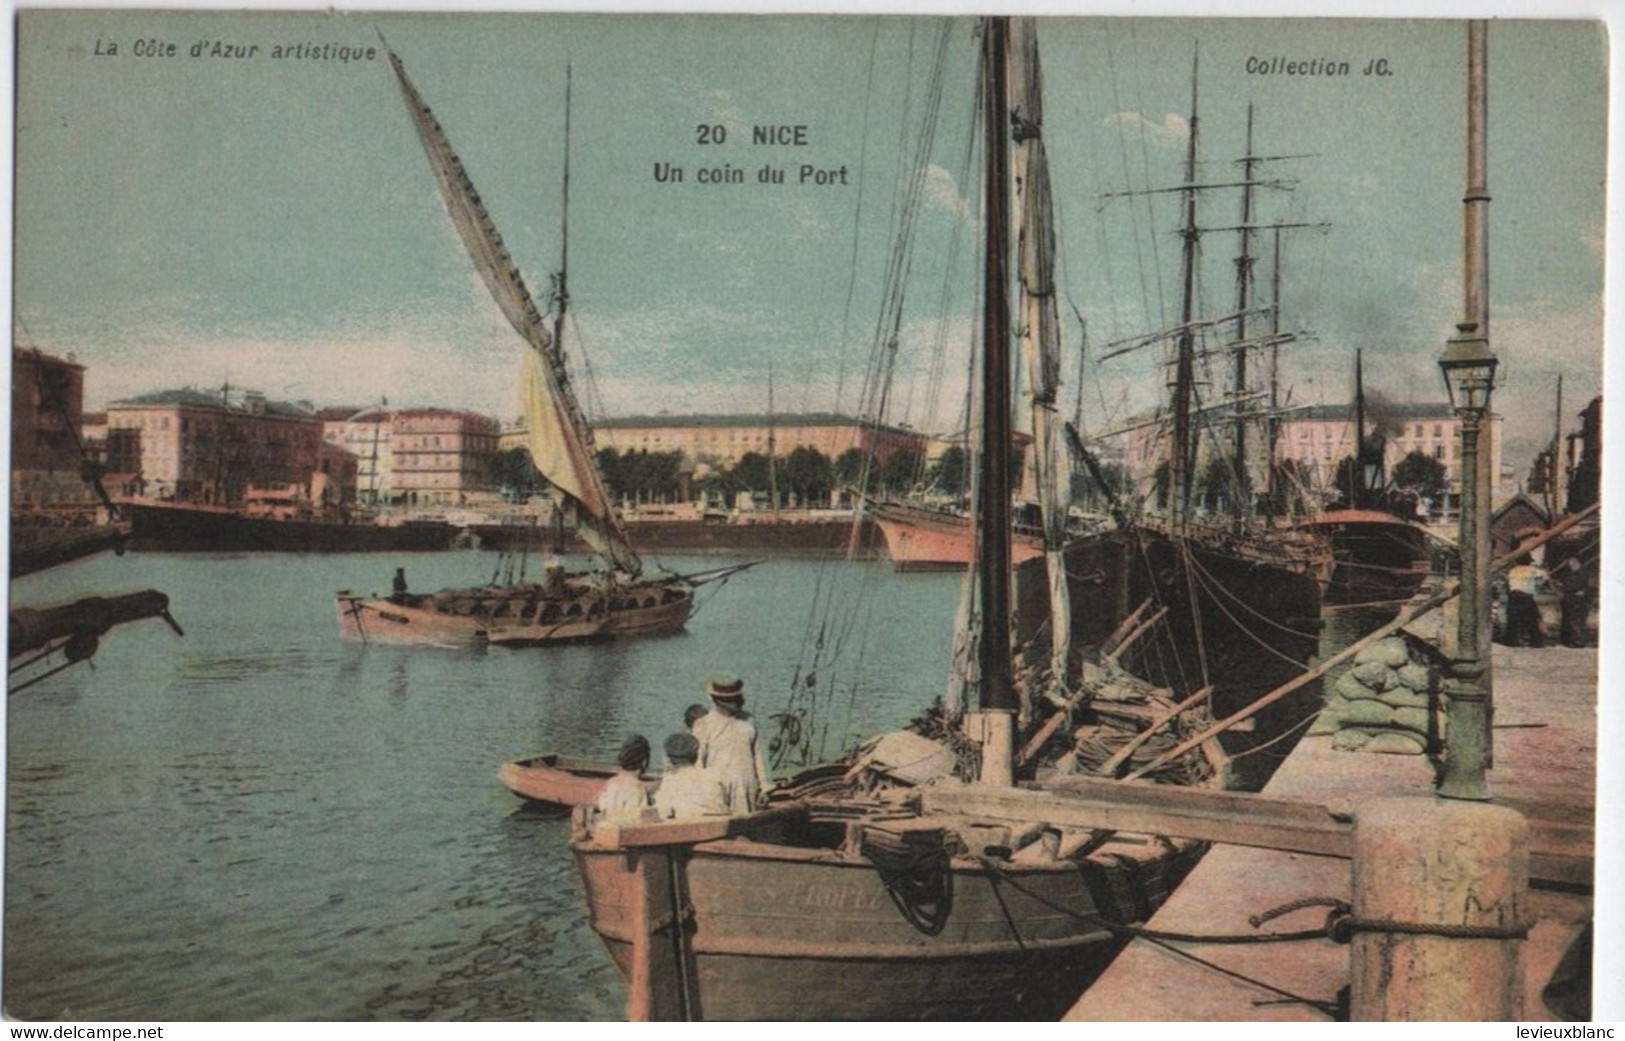 Carte Postale Ancienne /Un Coin Du PORT / NICE/Alpes Maritimes/ Vers1900-1930  CPDIV288 - Transport (sea) - Harbour